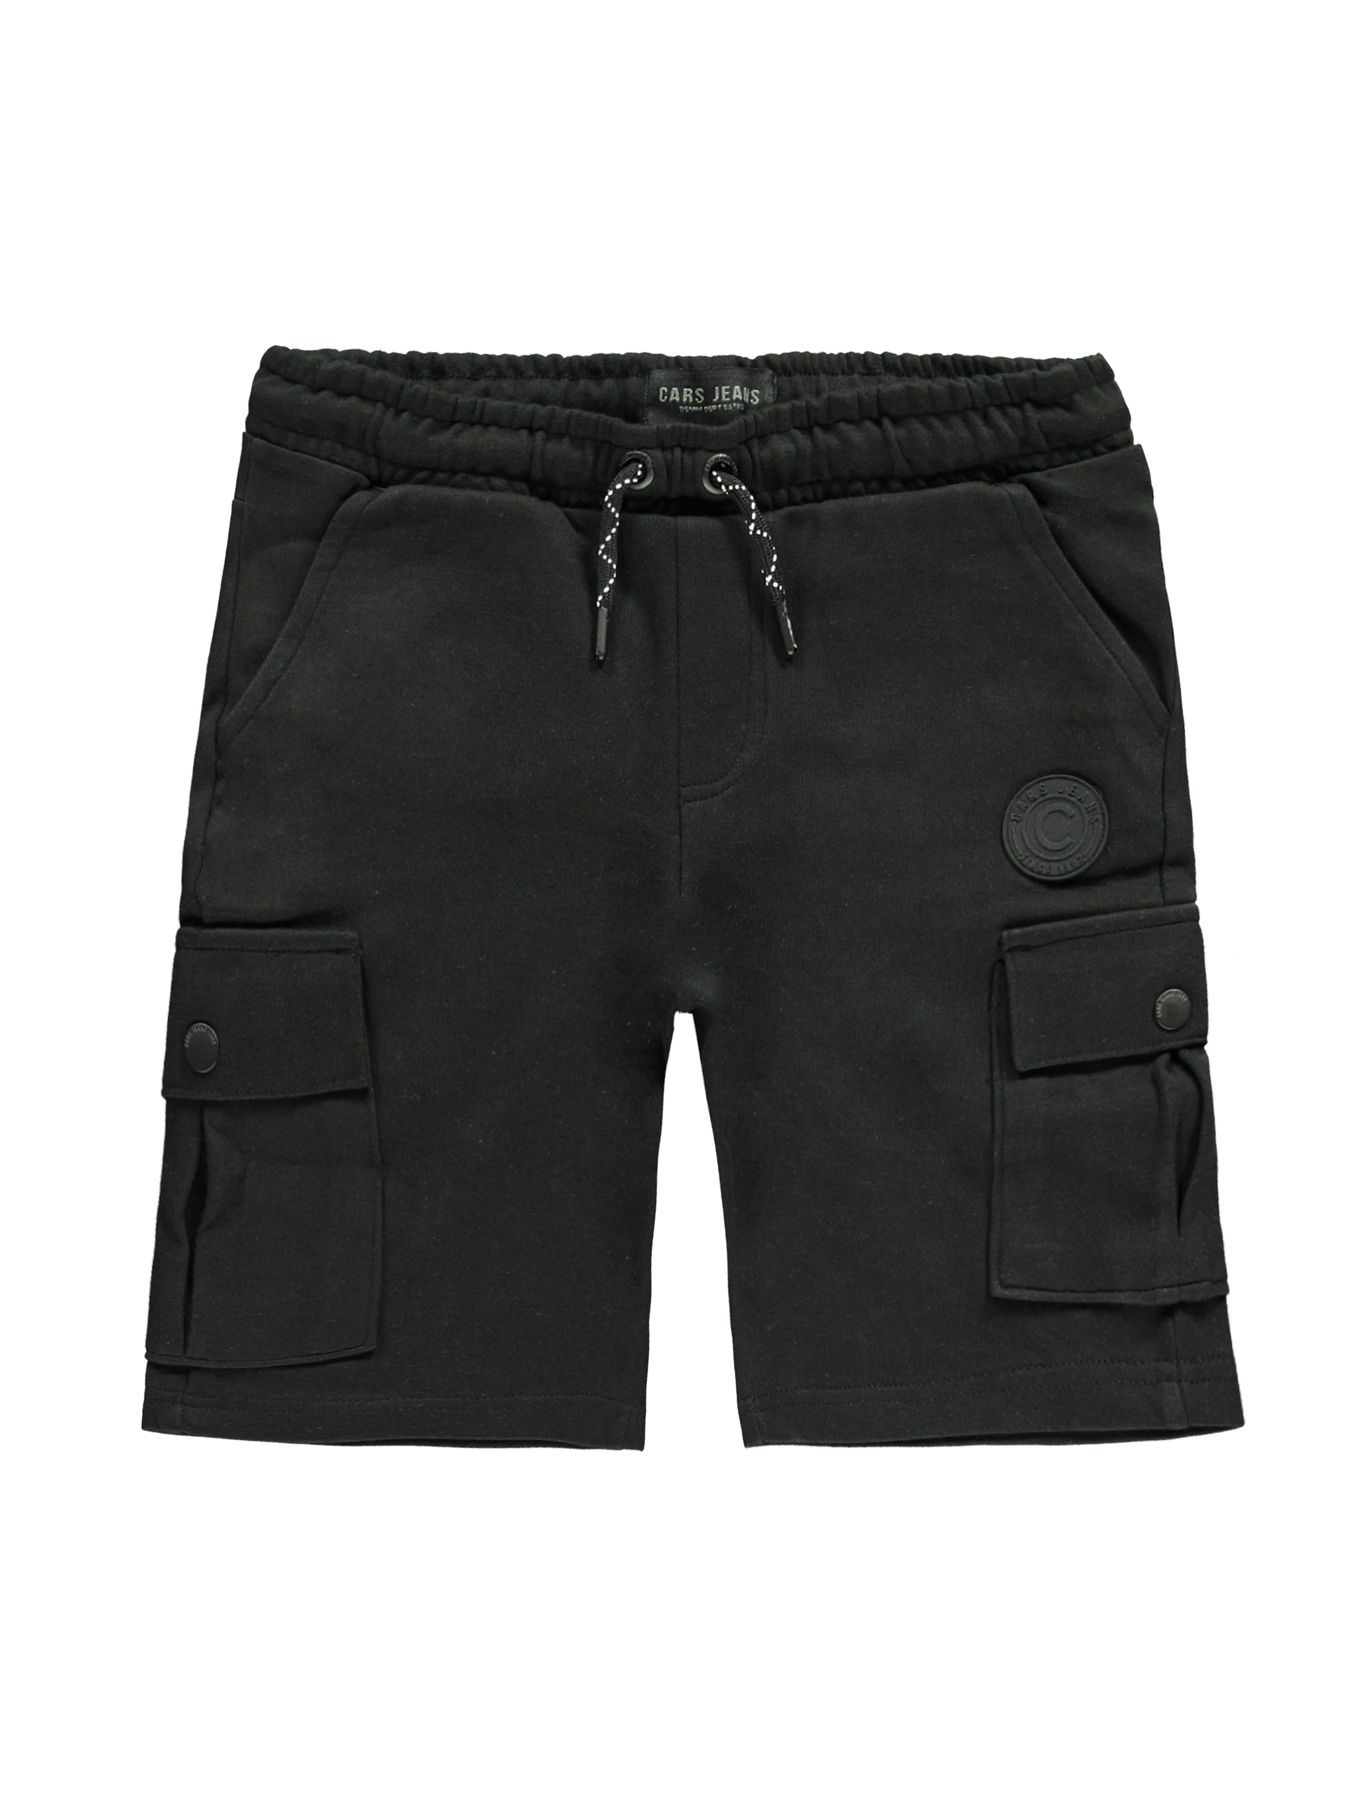 Cars jeans Short Shanes Jr. 01 black 00107282-EKA03000200000001